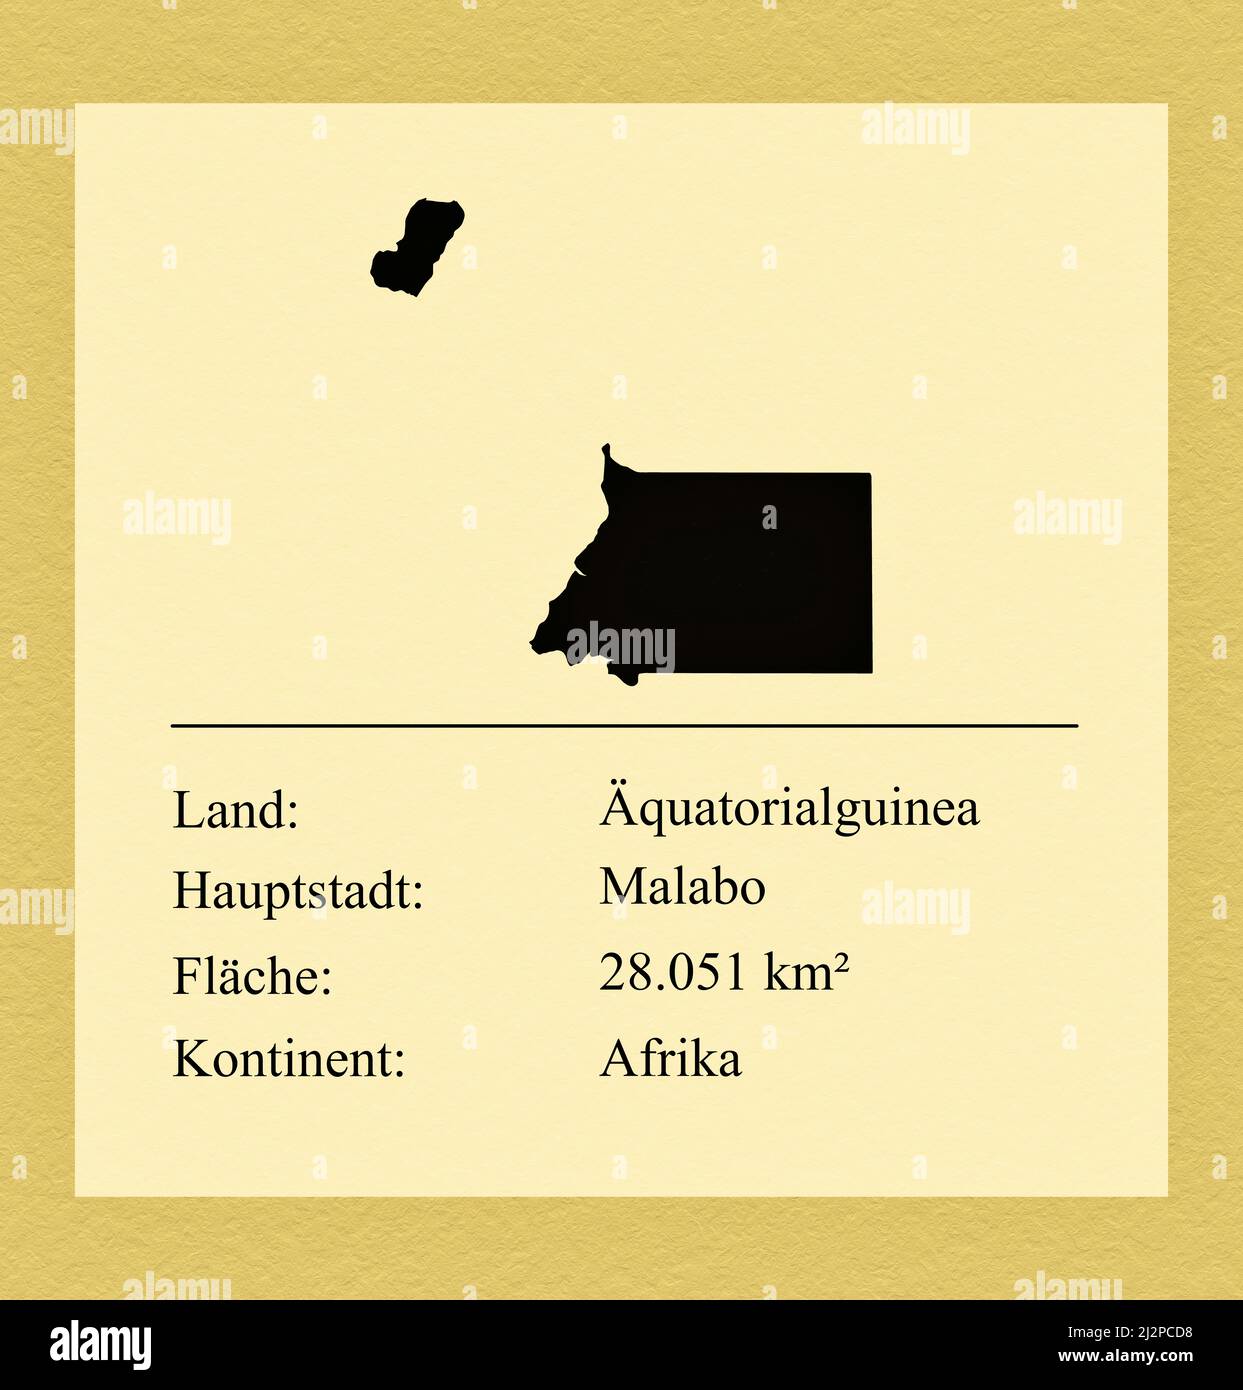 Umrisse des Landes Äquatorialguinea, darunter ein kleiner Steckbrief mit Ländernamen, Hauptstadt, Fläche und Kontinent Stock Photo